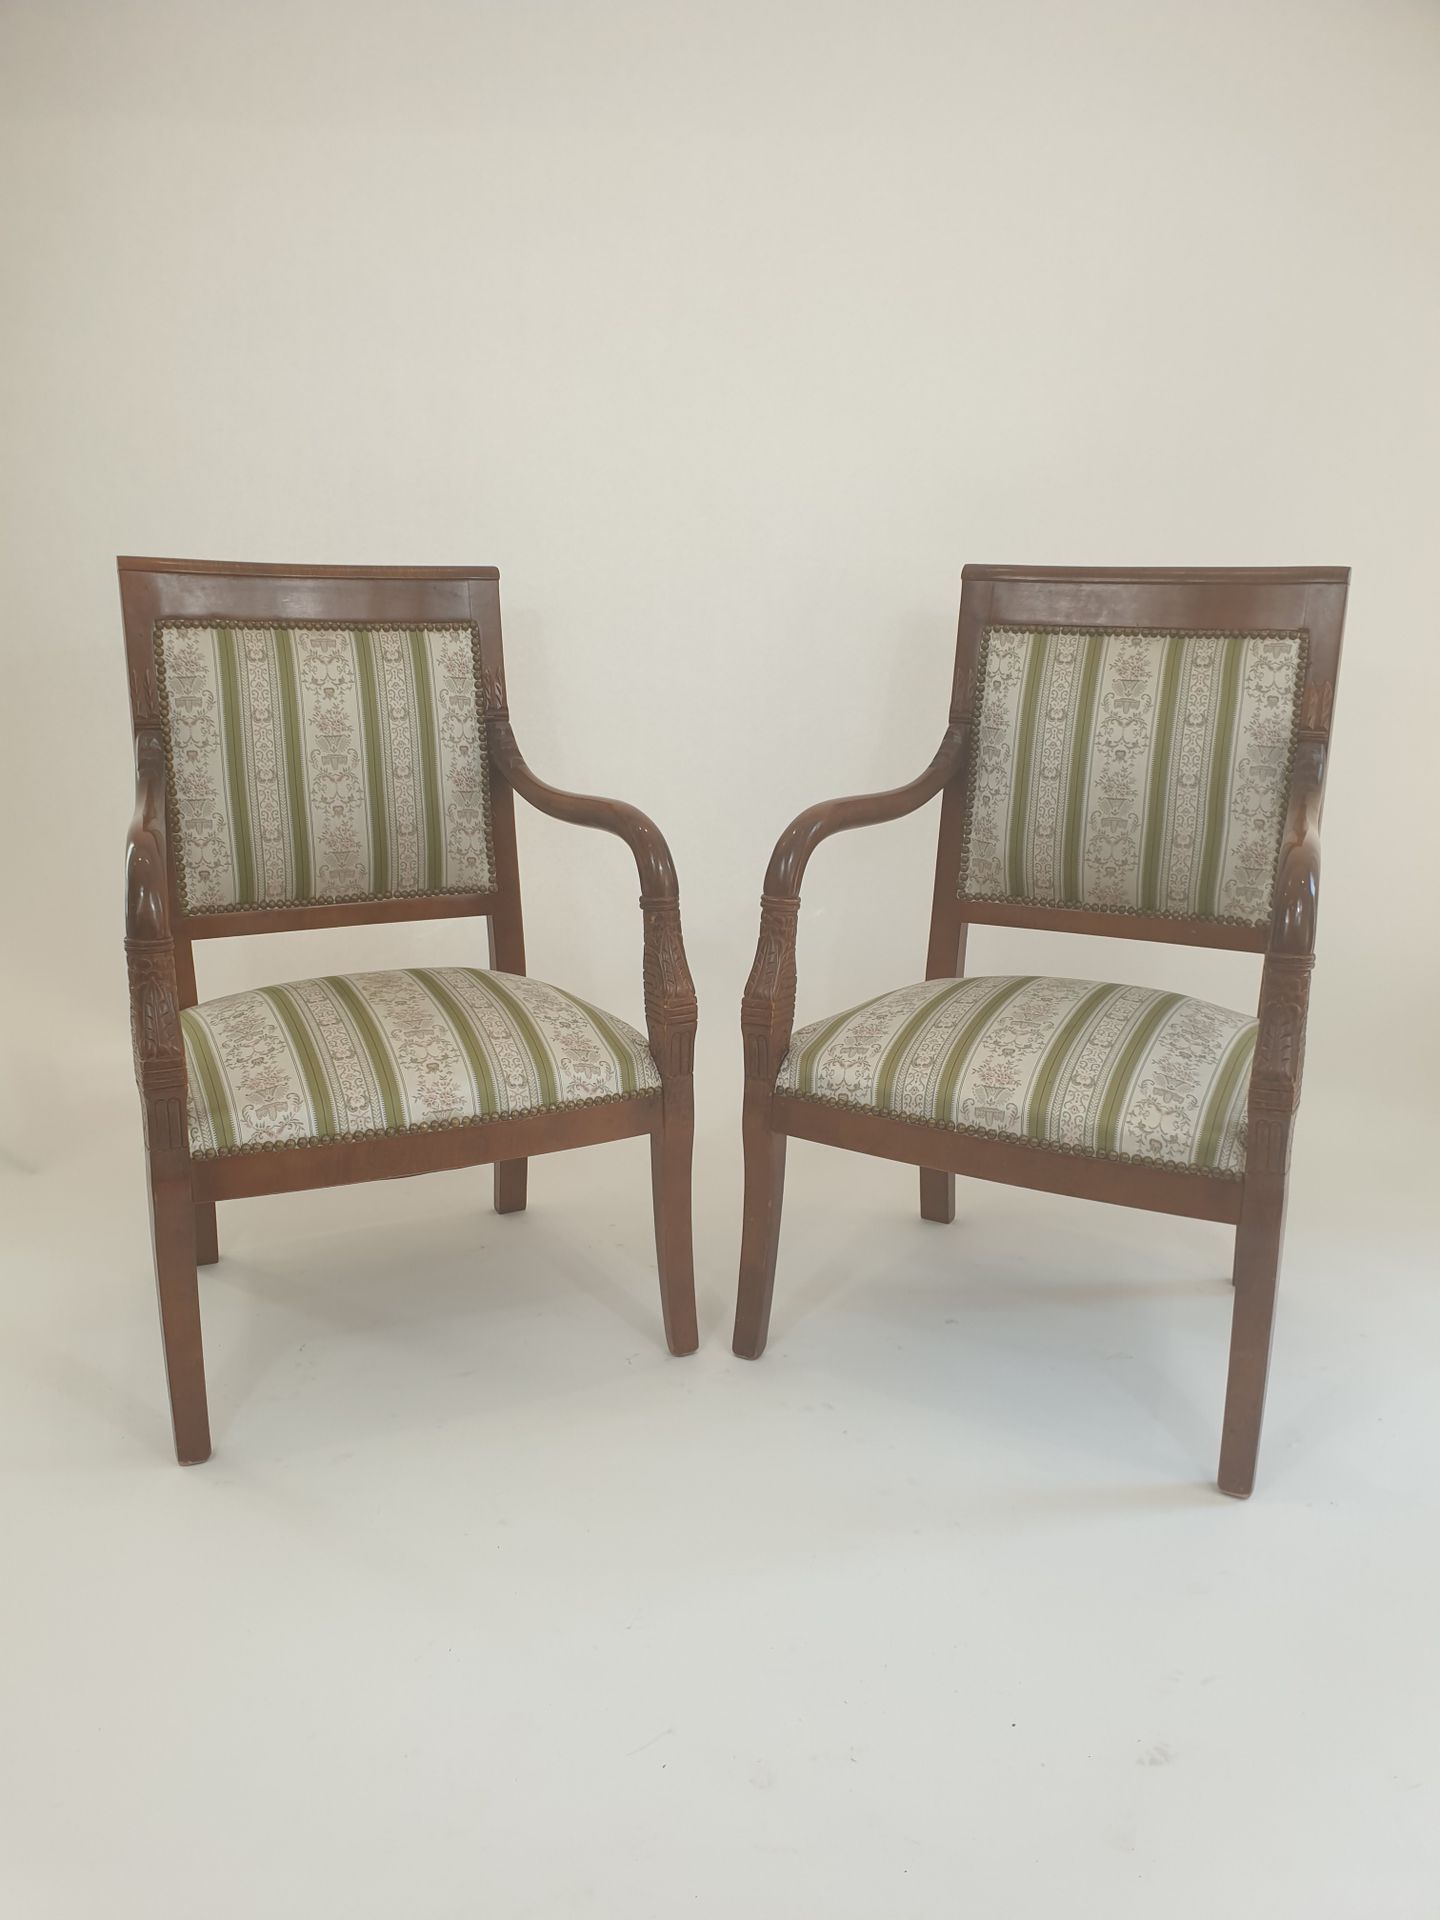 Null 一对着色的天然木扶手椅，有直的靠背和扶手，上面雕刻着树叶。
帝国风格，20世纪
90 x 57 x 50厘米
(小事故和缺失的部分)